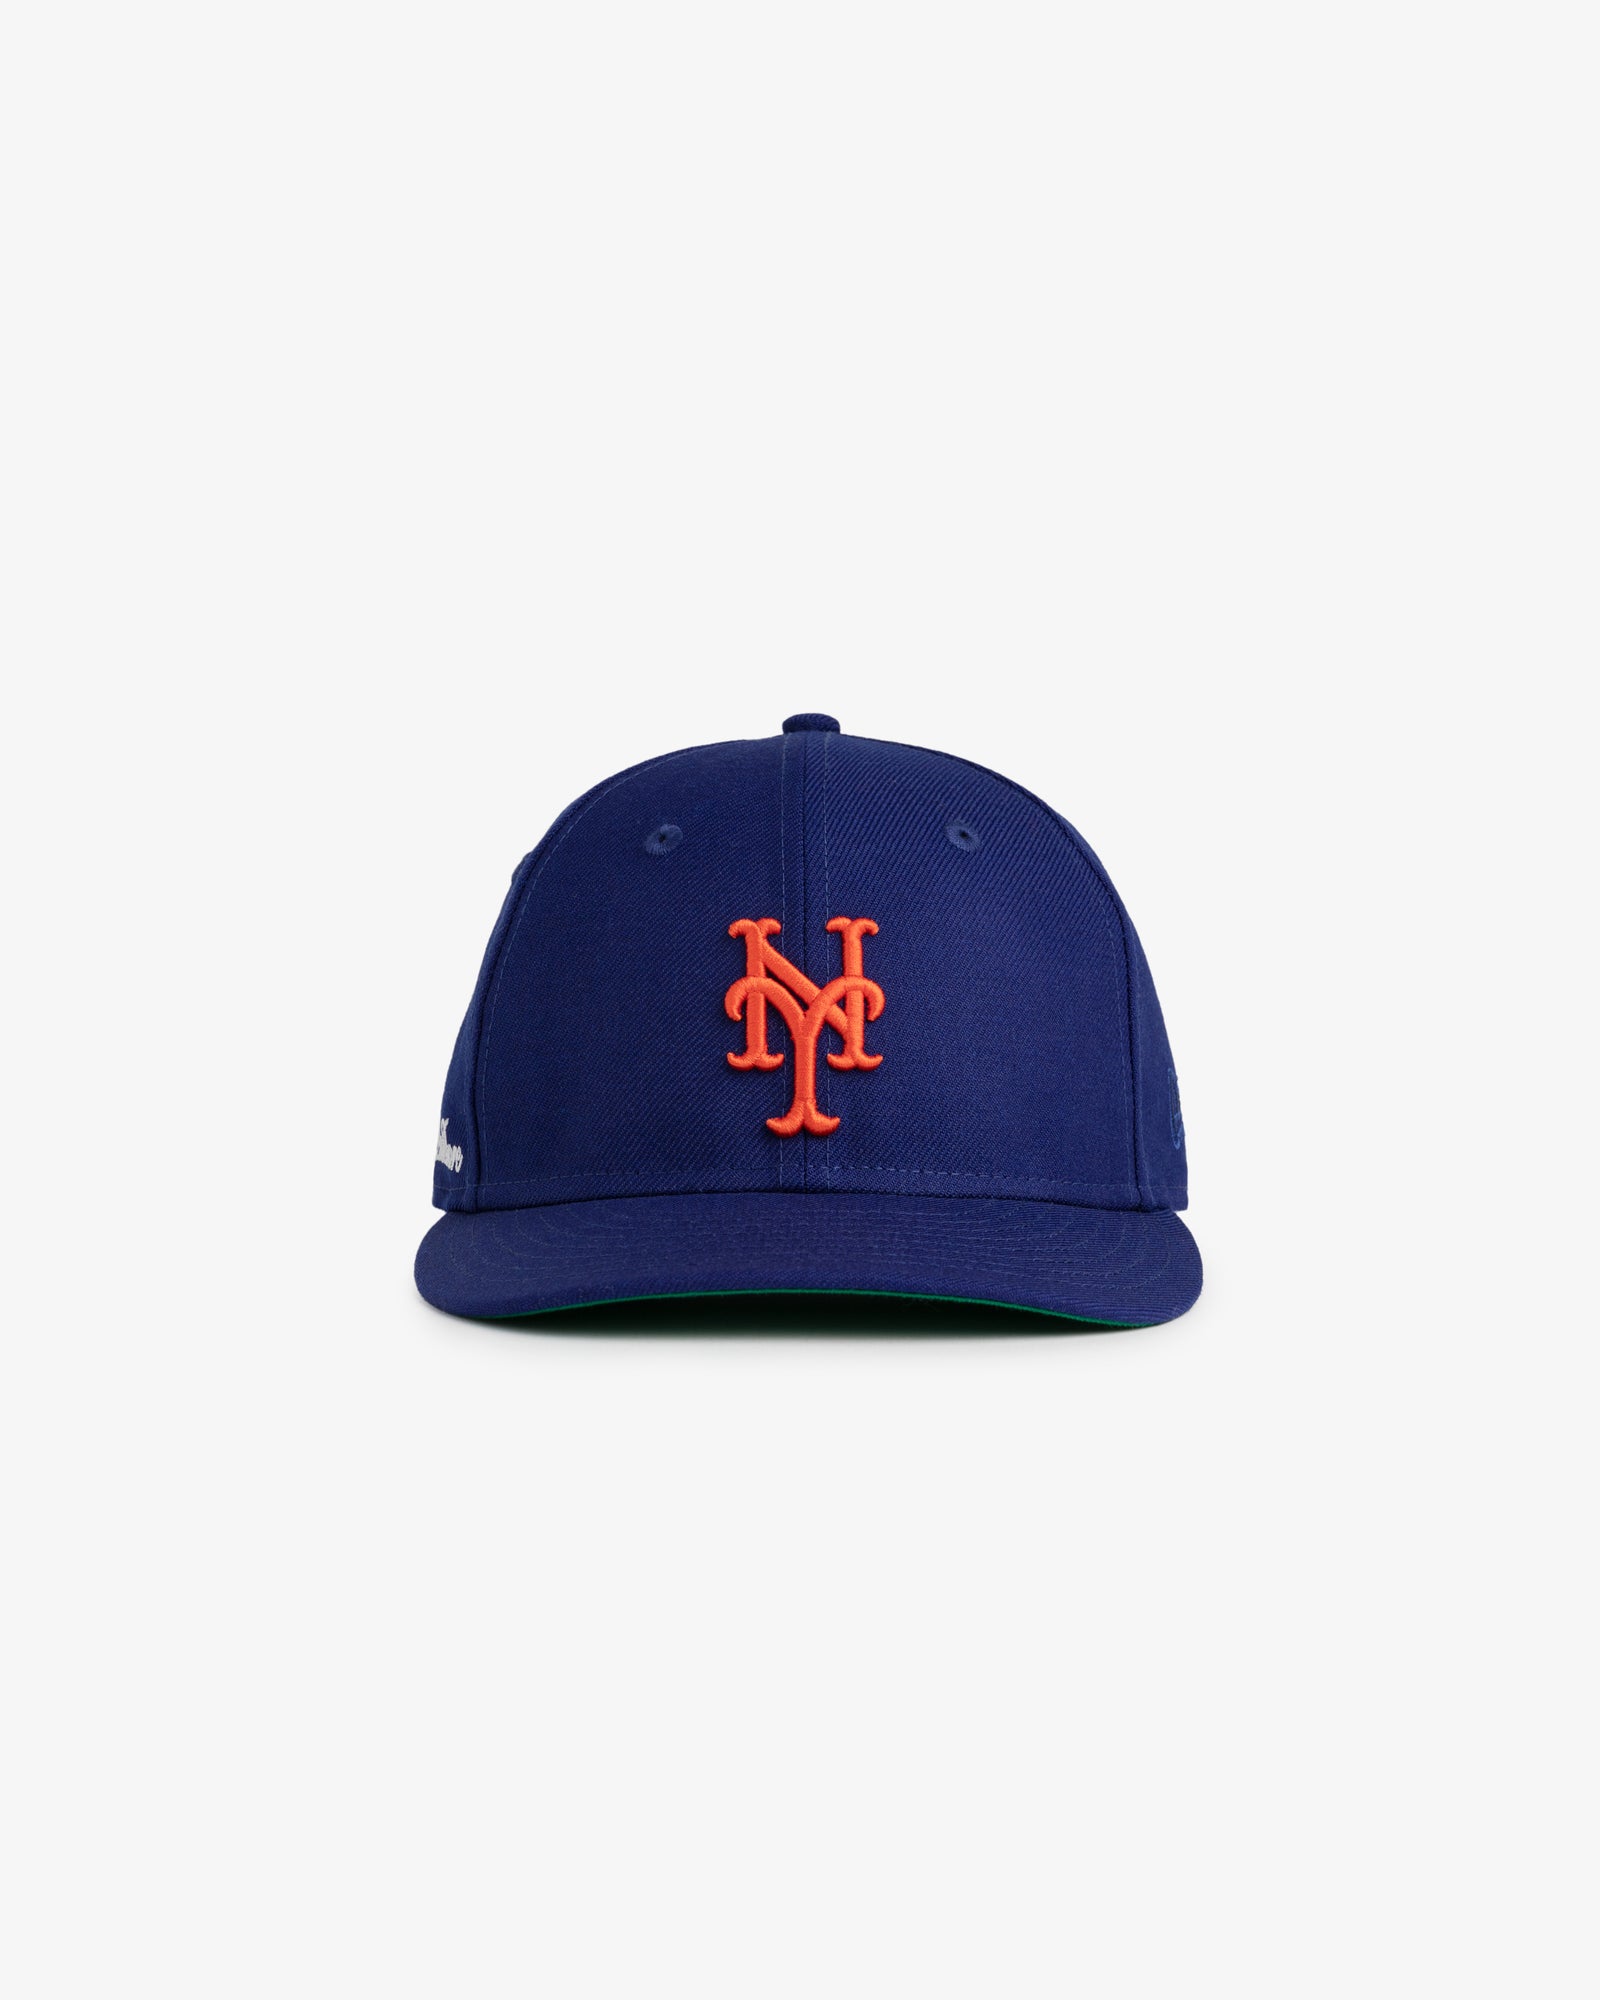 Men's New York Mets Hats